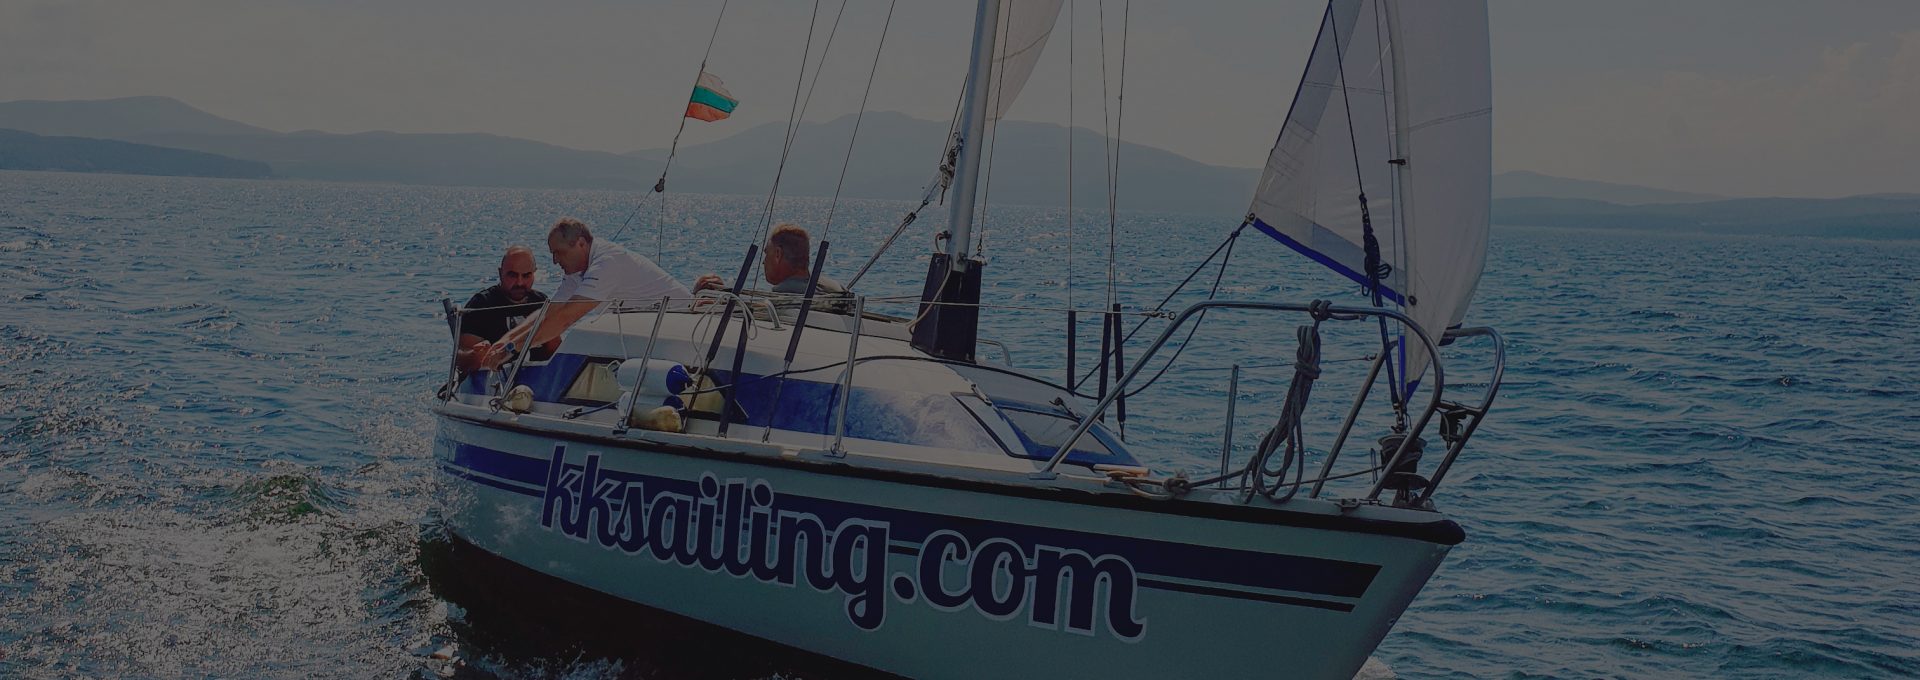 KK Sailing